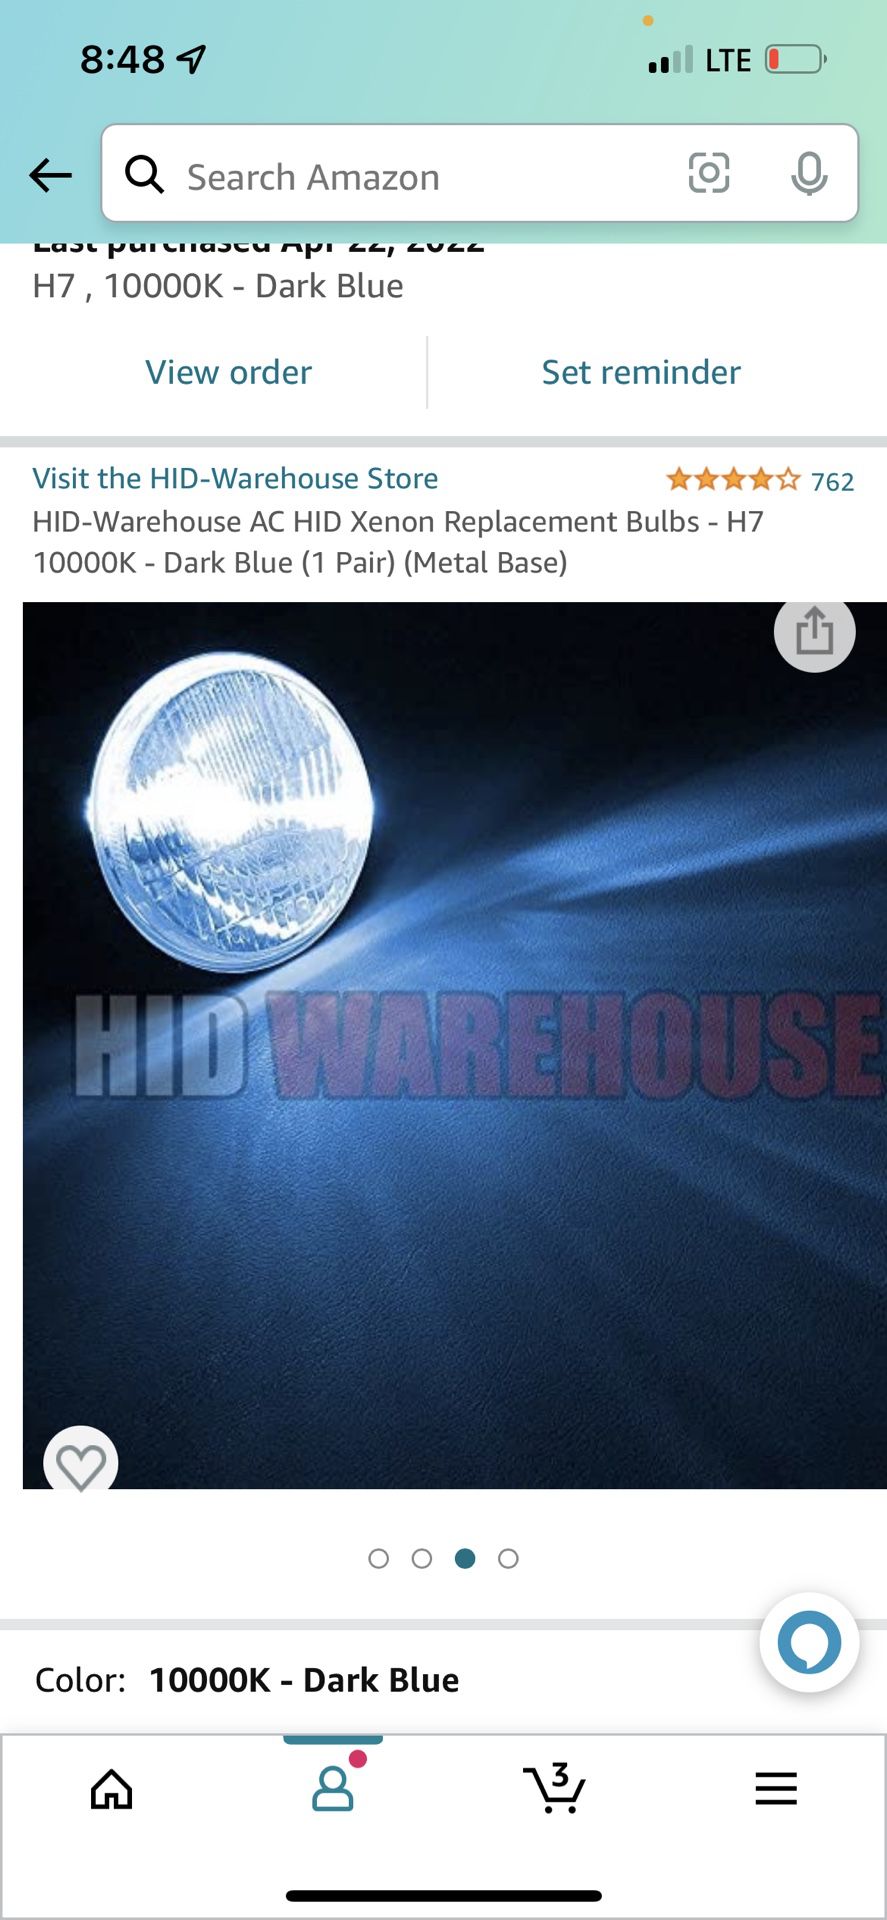 HID-Warehouse AC HID Xenon Replacement Bulbs - H7 10000K - Dark Blue (1 Pair) (Metal Base)